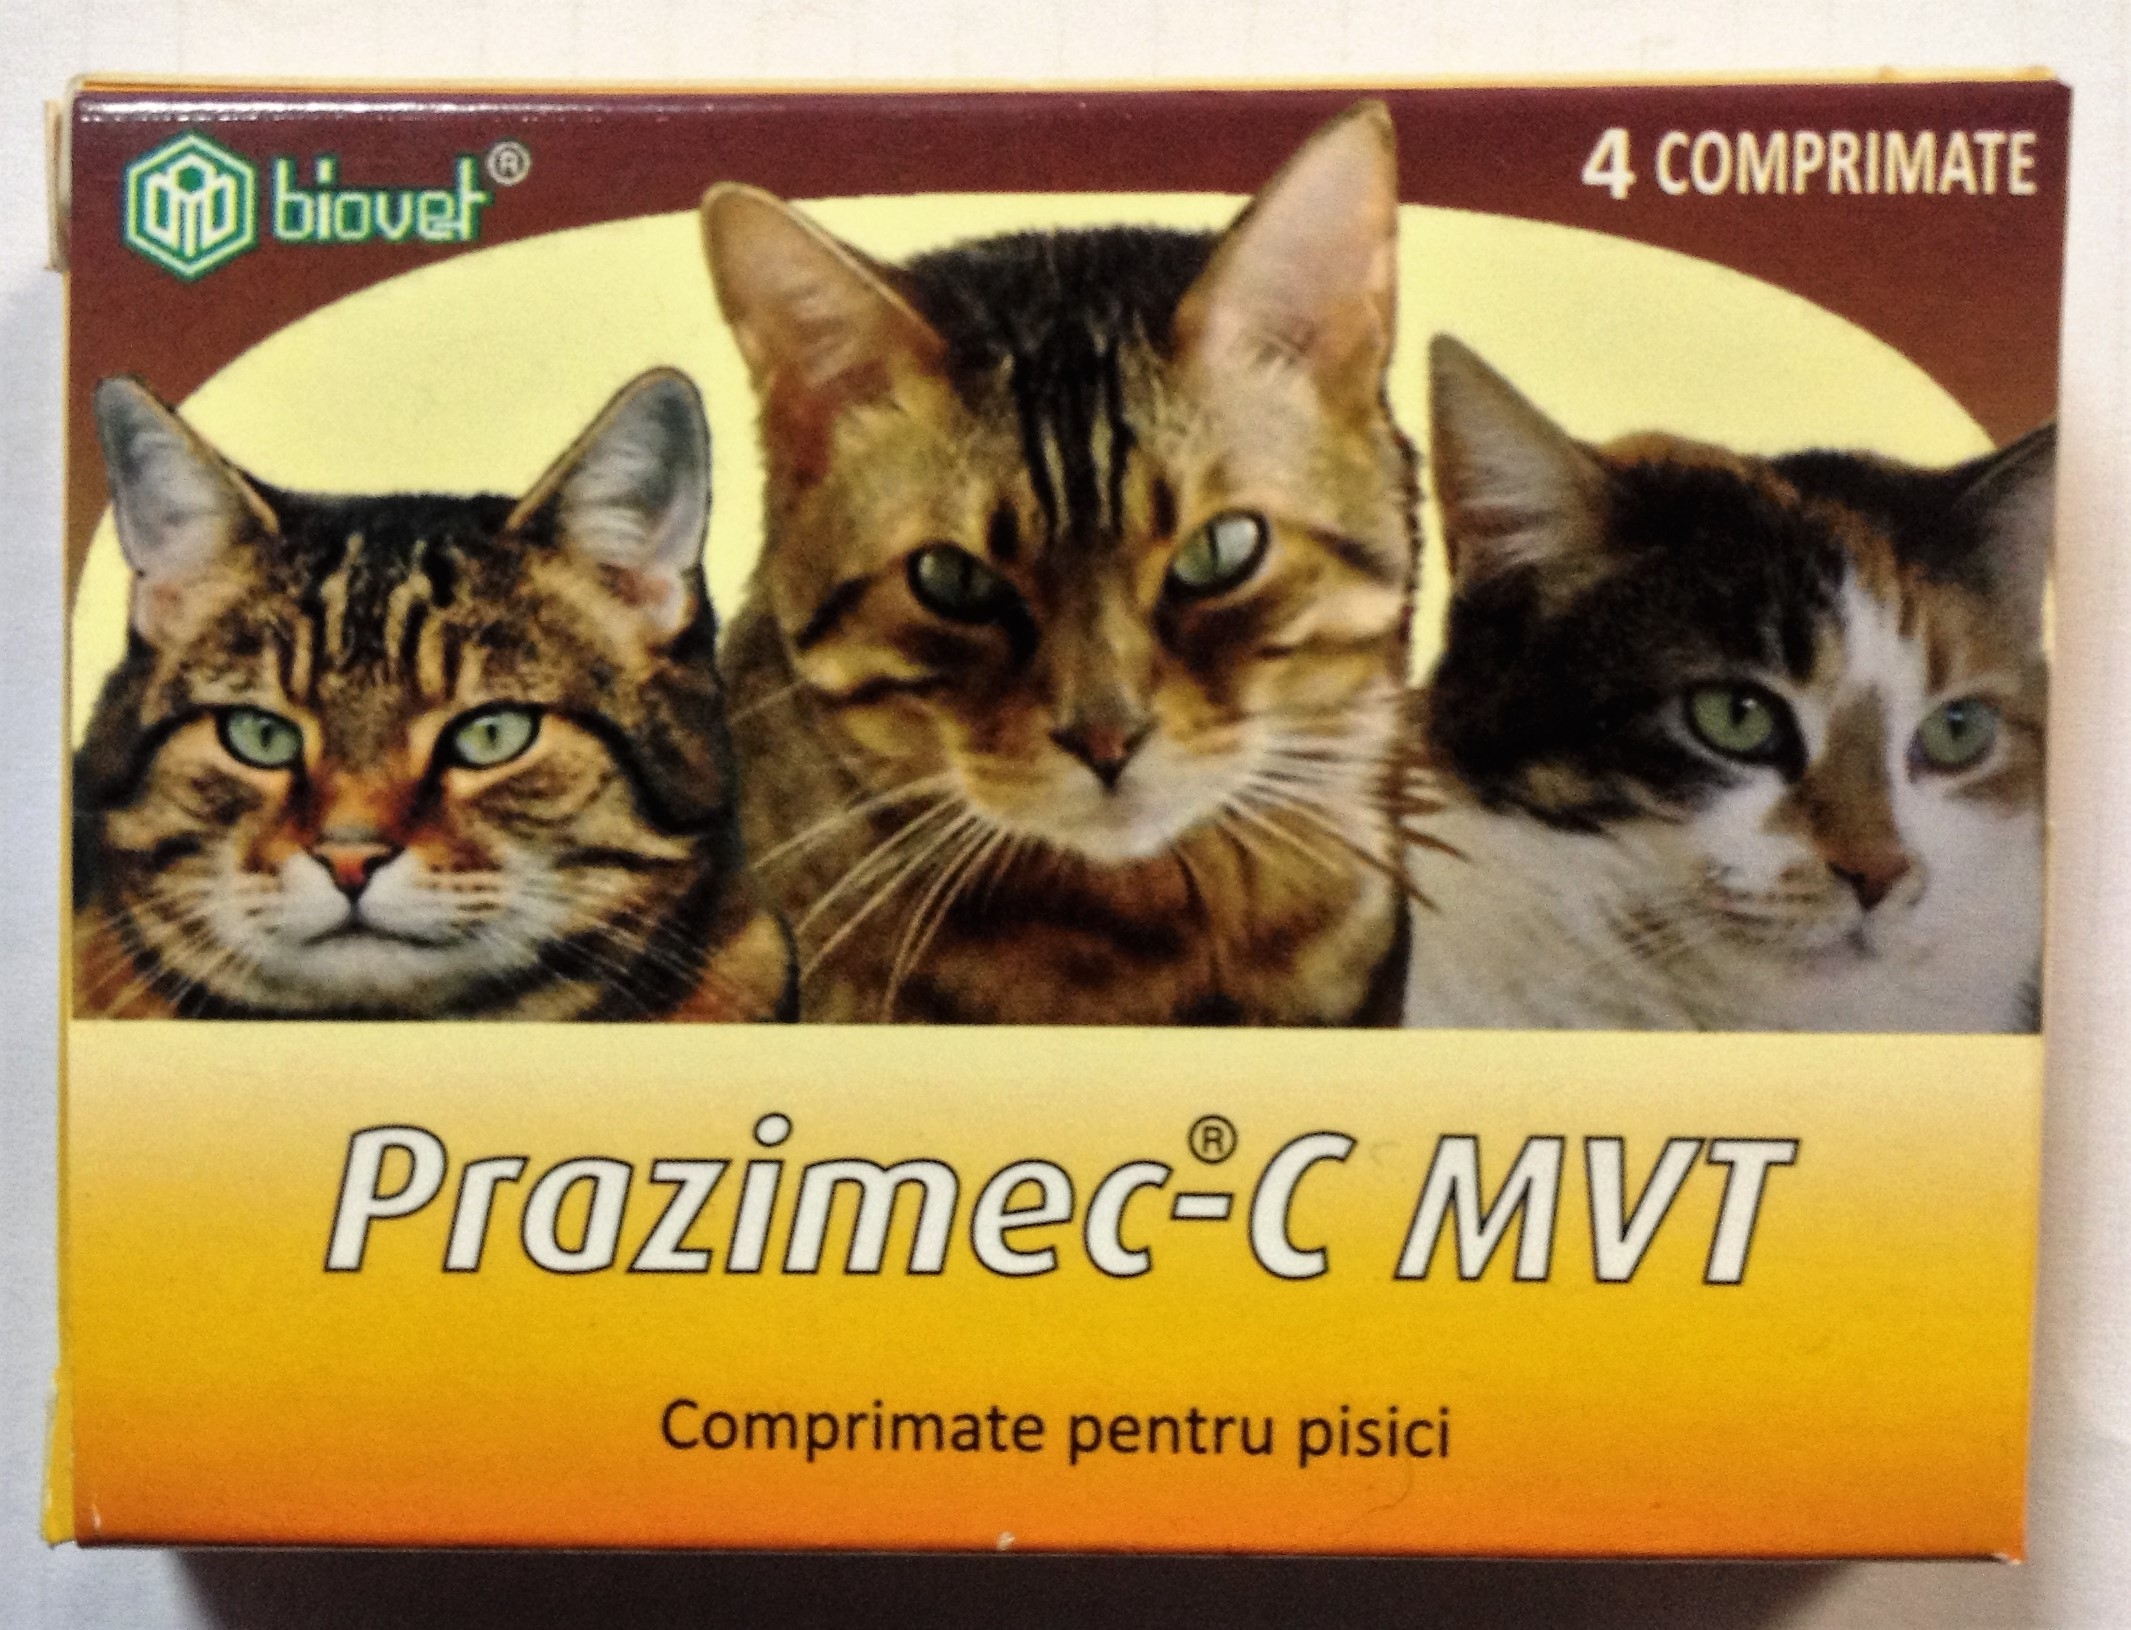 Prazimec C pisici 4 comprimate Biovet